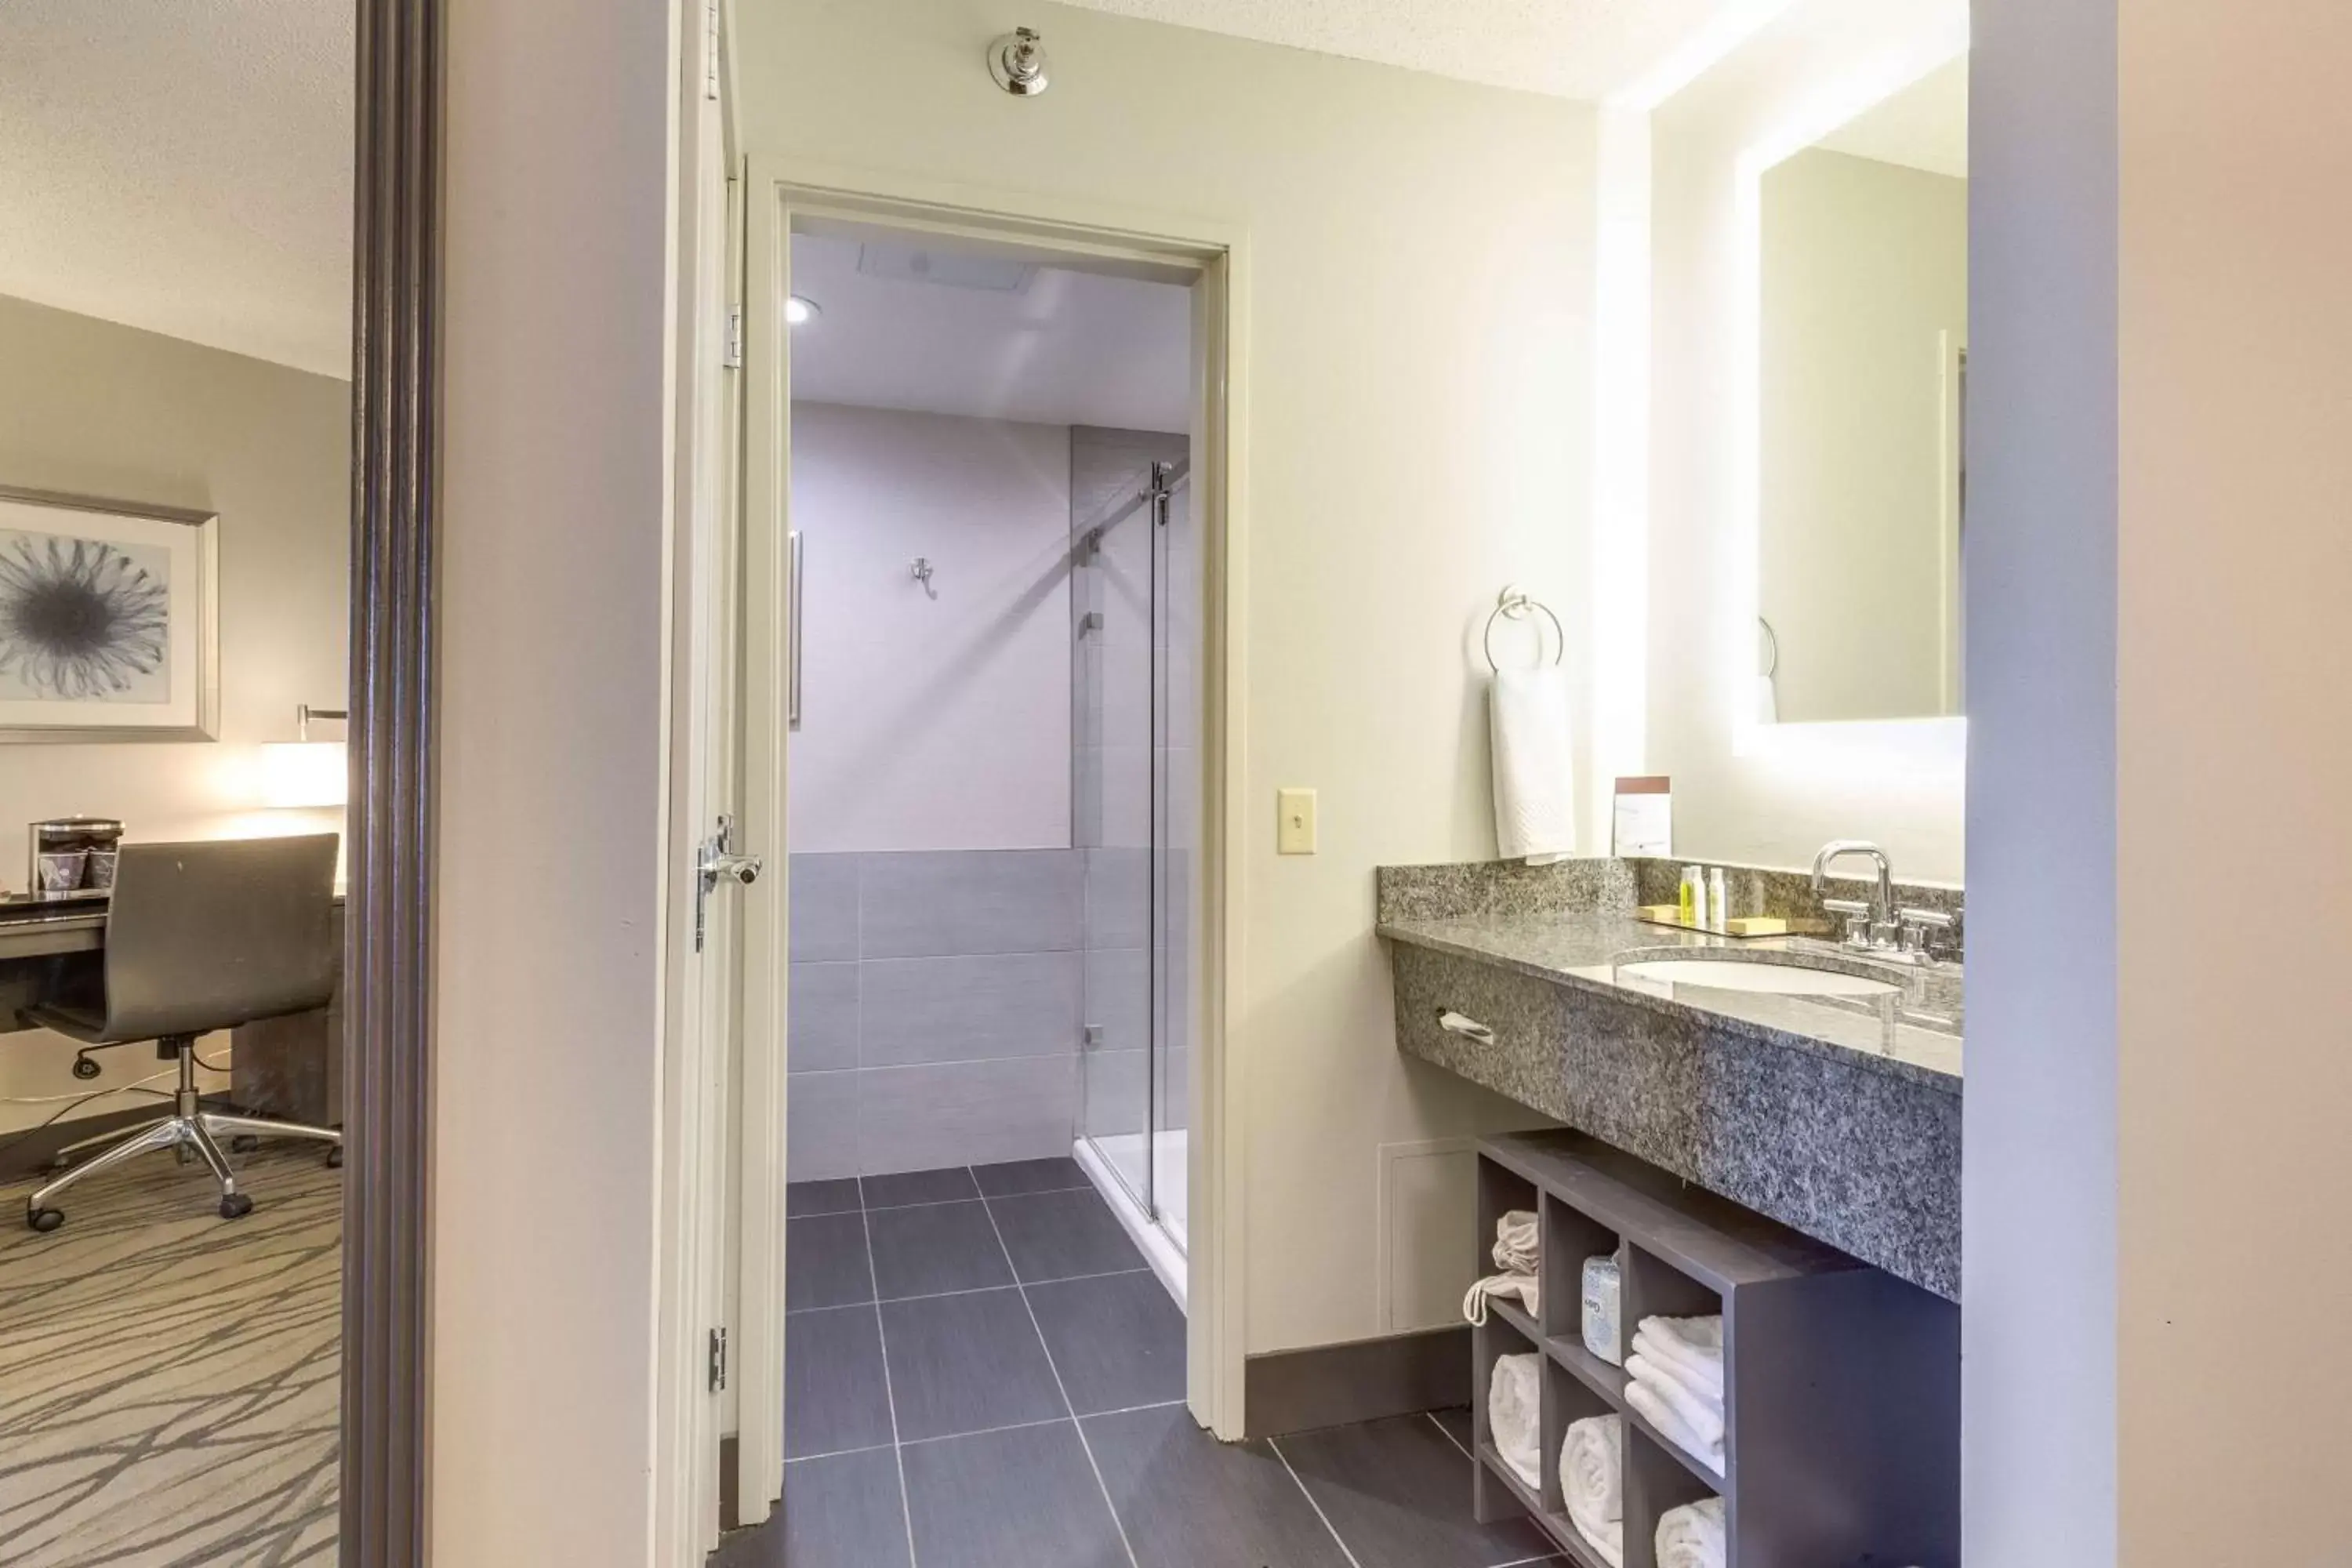 Bedroom, Bathroom in DoubleTree by Hilton Racine Harbourwalk